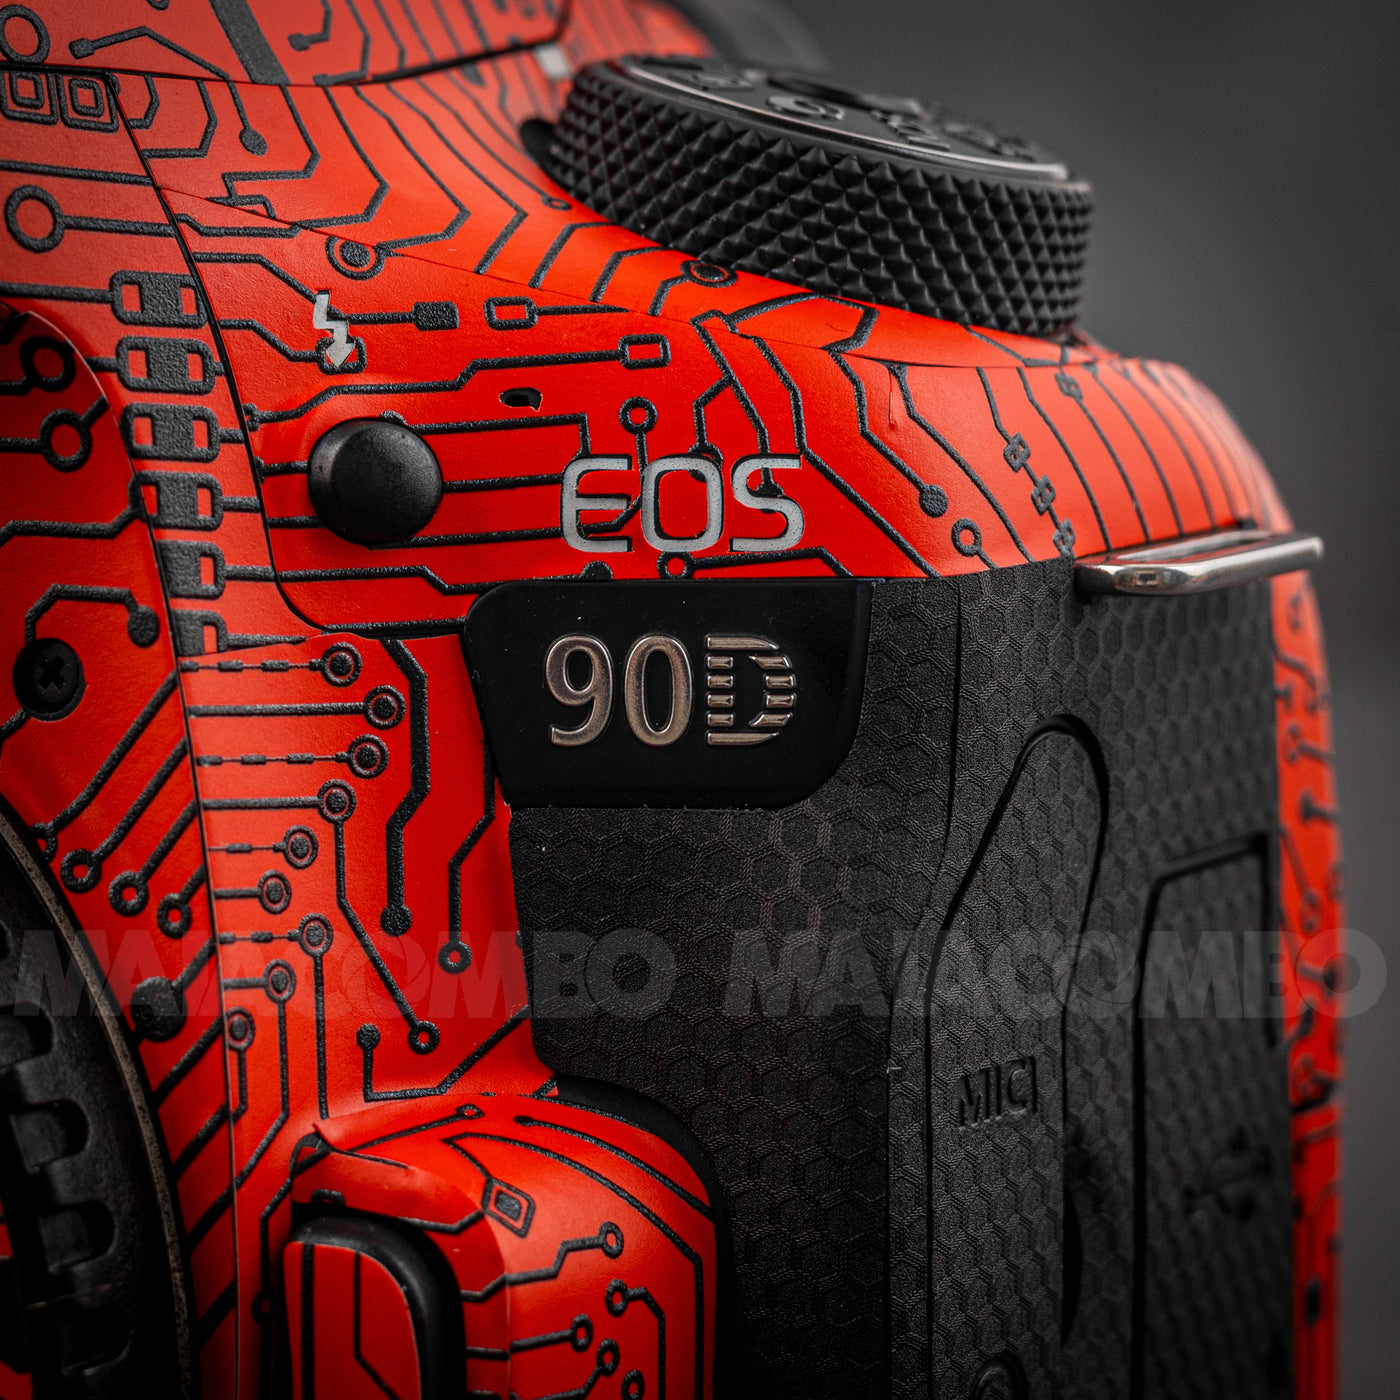 Canon EOS 90D Camera Skin/Wrap